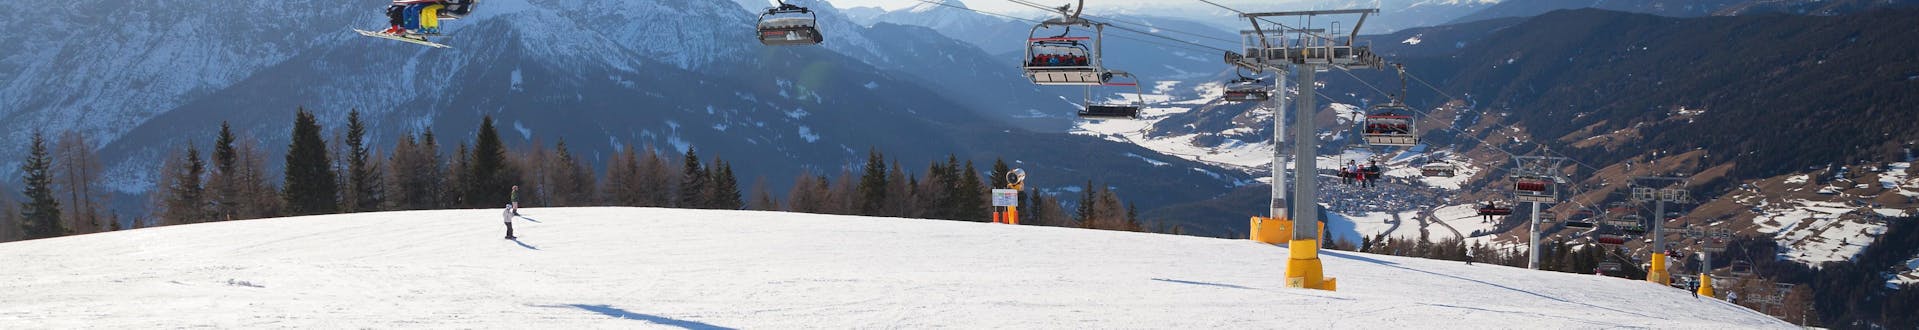 Skieurs sur les pistes et dans la remontée mécanique à Versciaco - Monte Elmo en Italie.